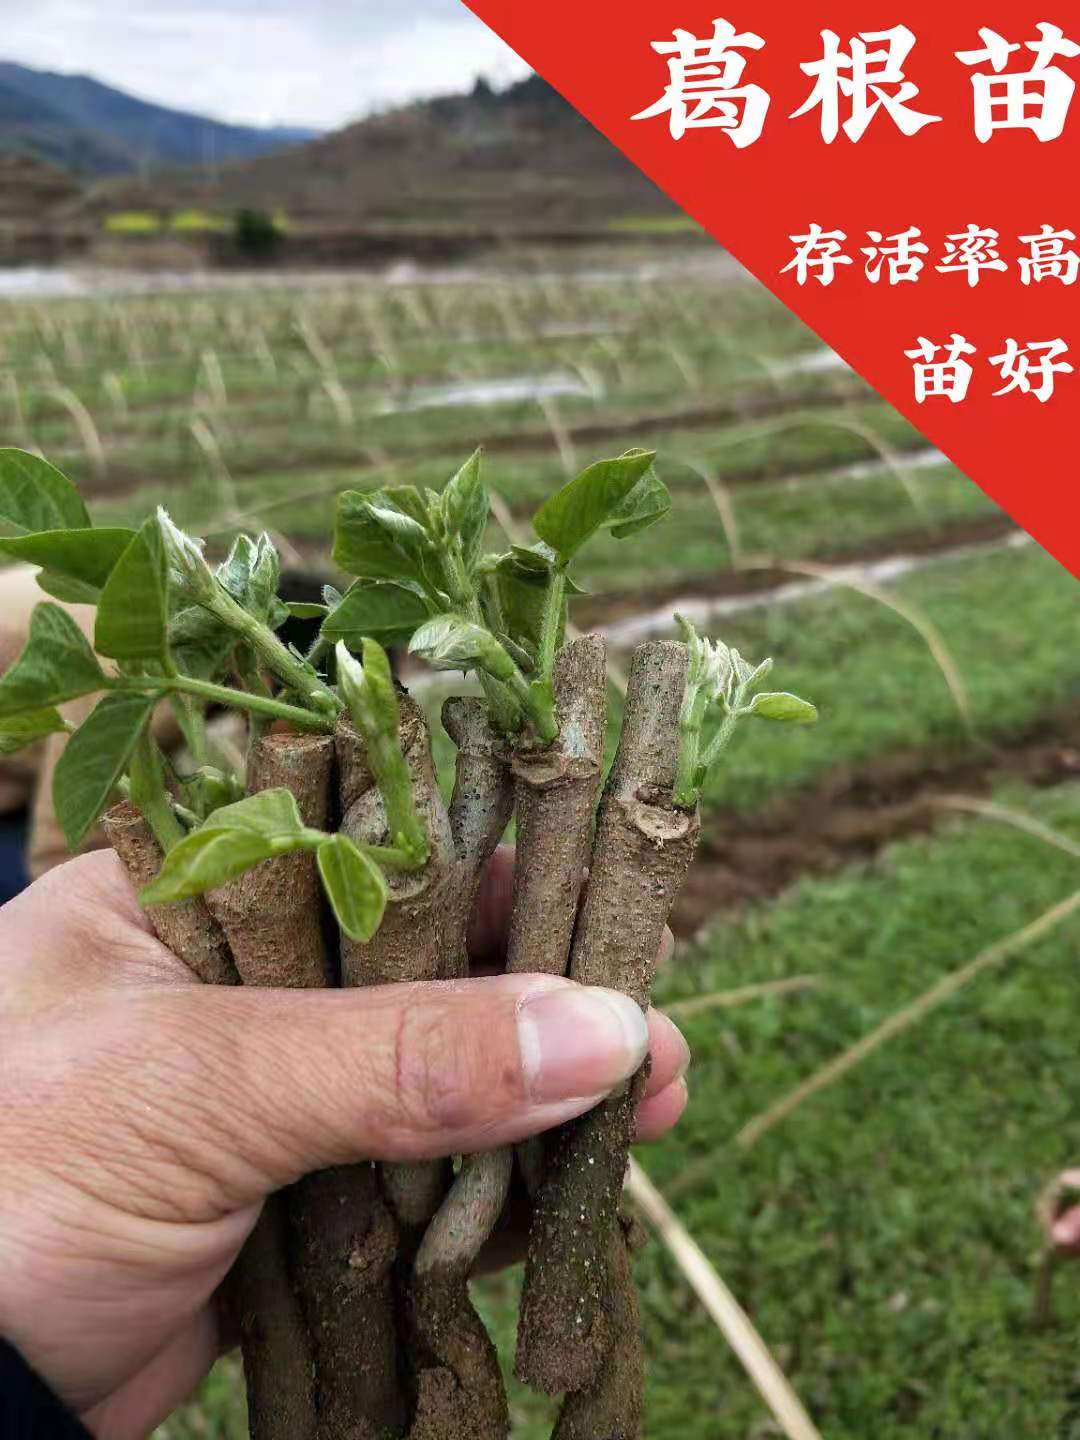 藤县食用葛  葛根种苗 当年种当年收 已发芽收货即可种植  优质葛苗 高产